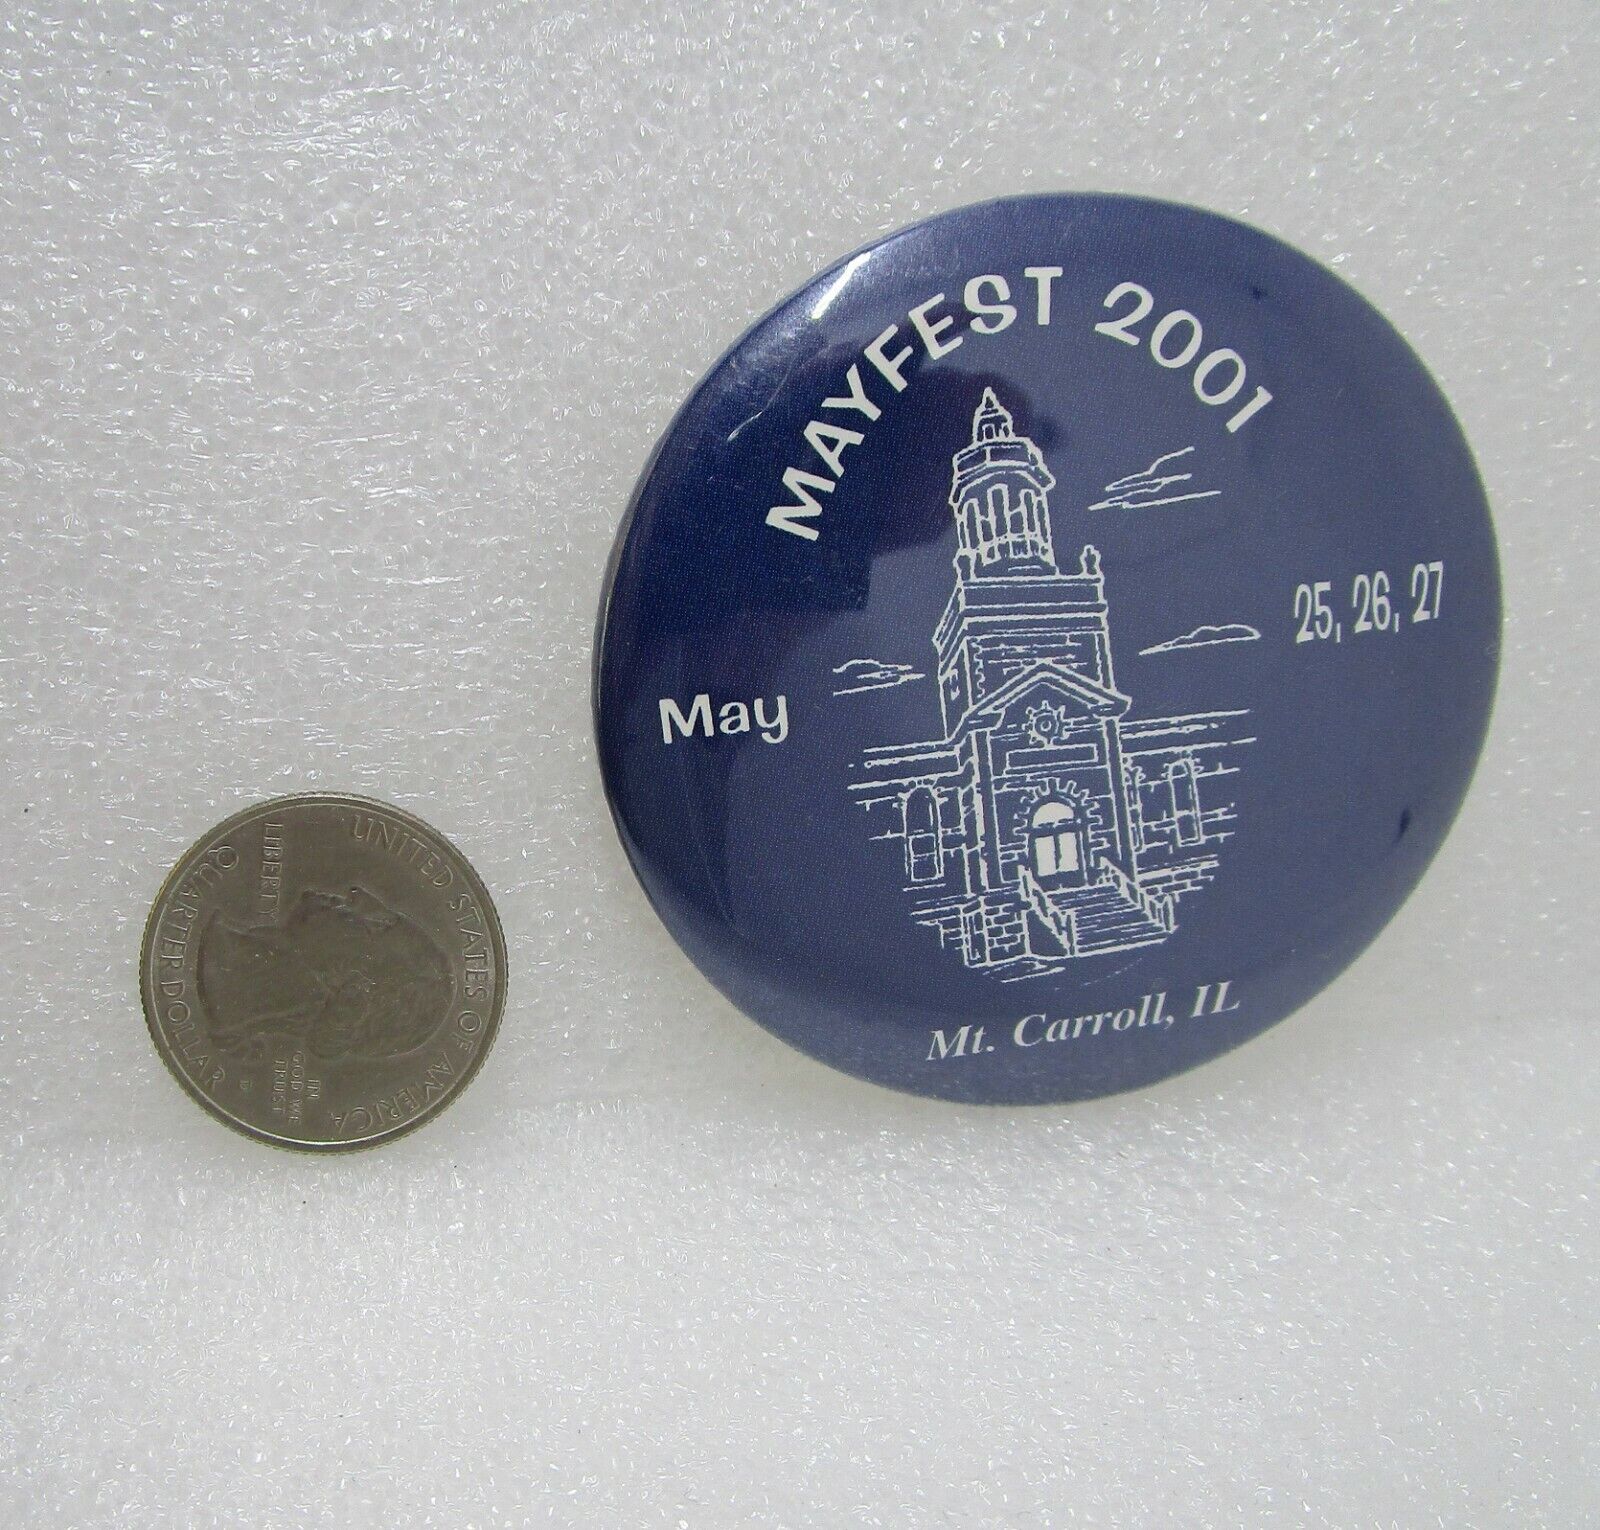 2001 Mayfest Arts Festival Mount Carroll Illinois Button Pin